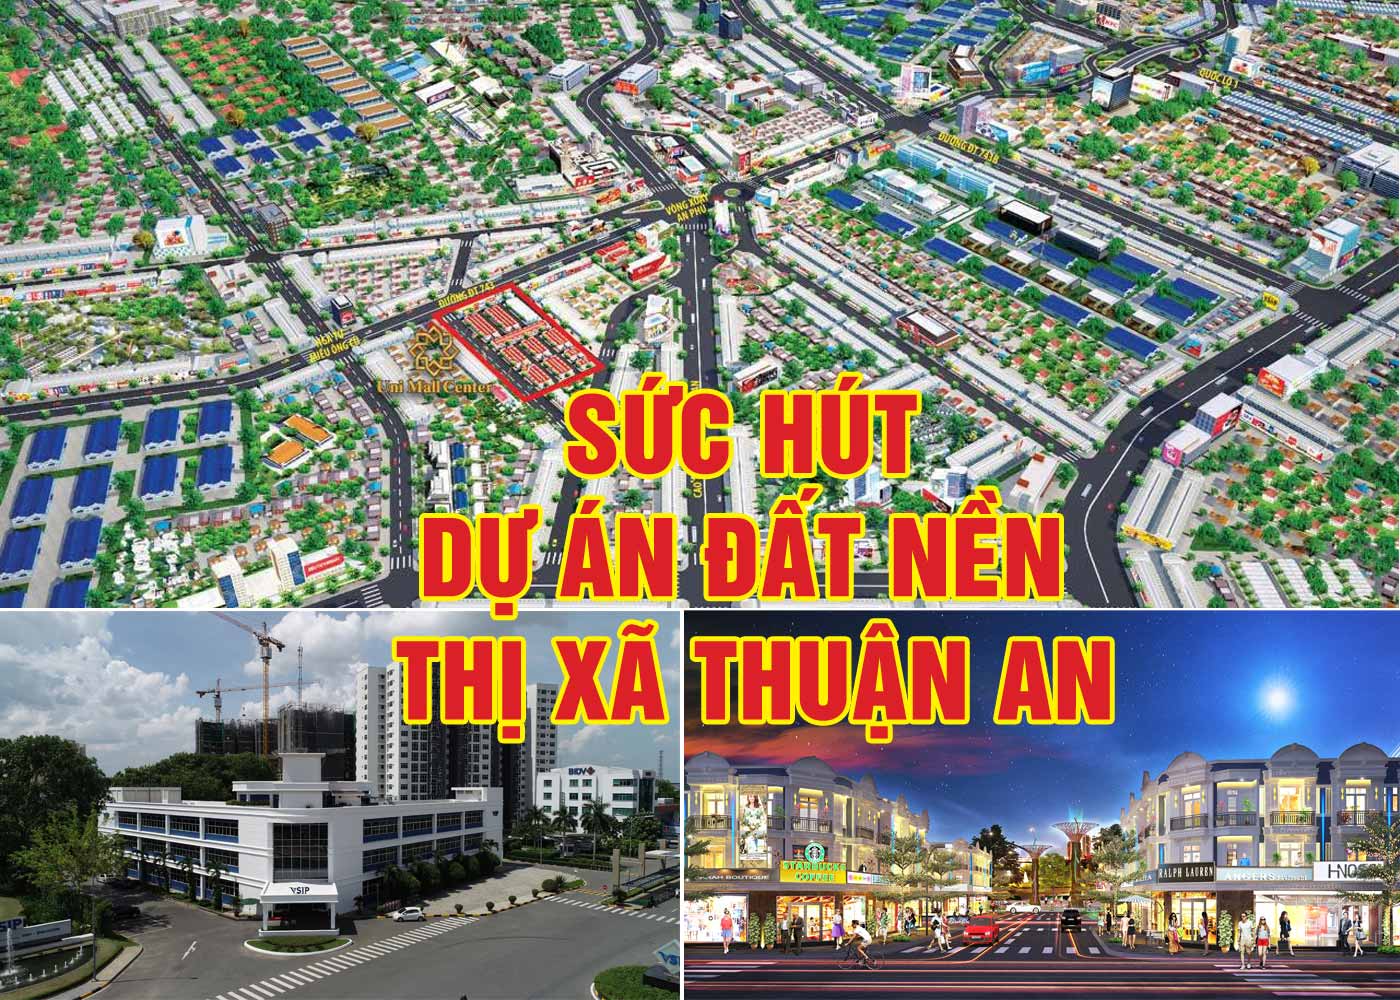 Sức hút dự án đất nền thị xã Thuận An - Ảnh 1